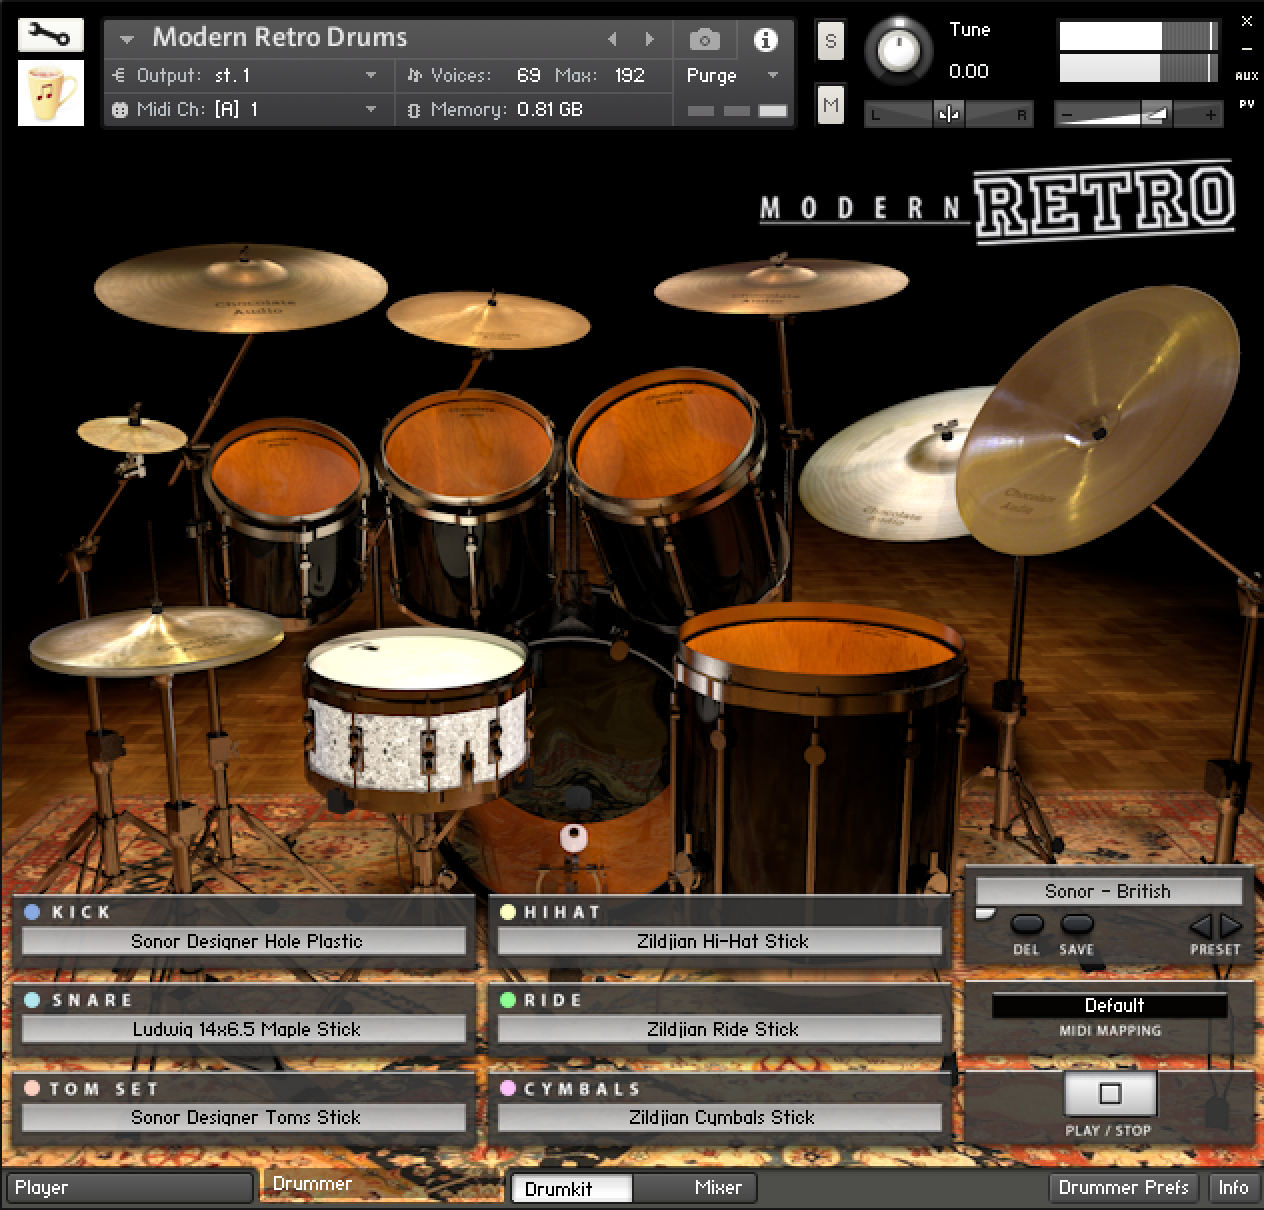 Brazilian drums kontakt torrent gta san andreas mods 2013 download torent